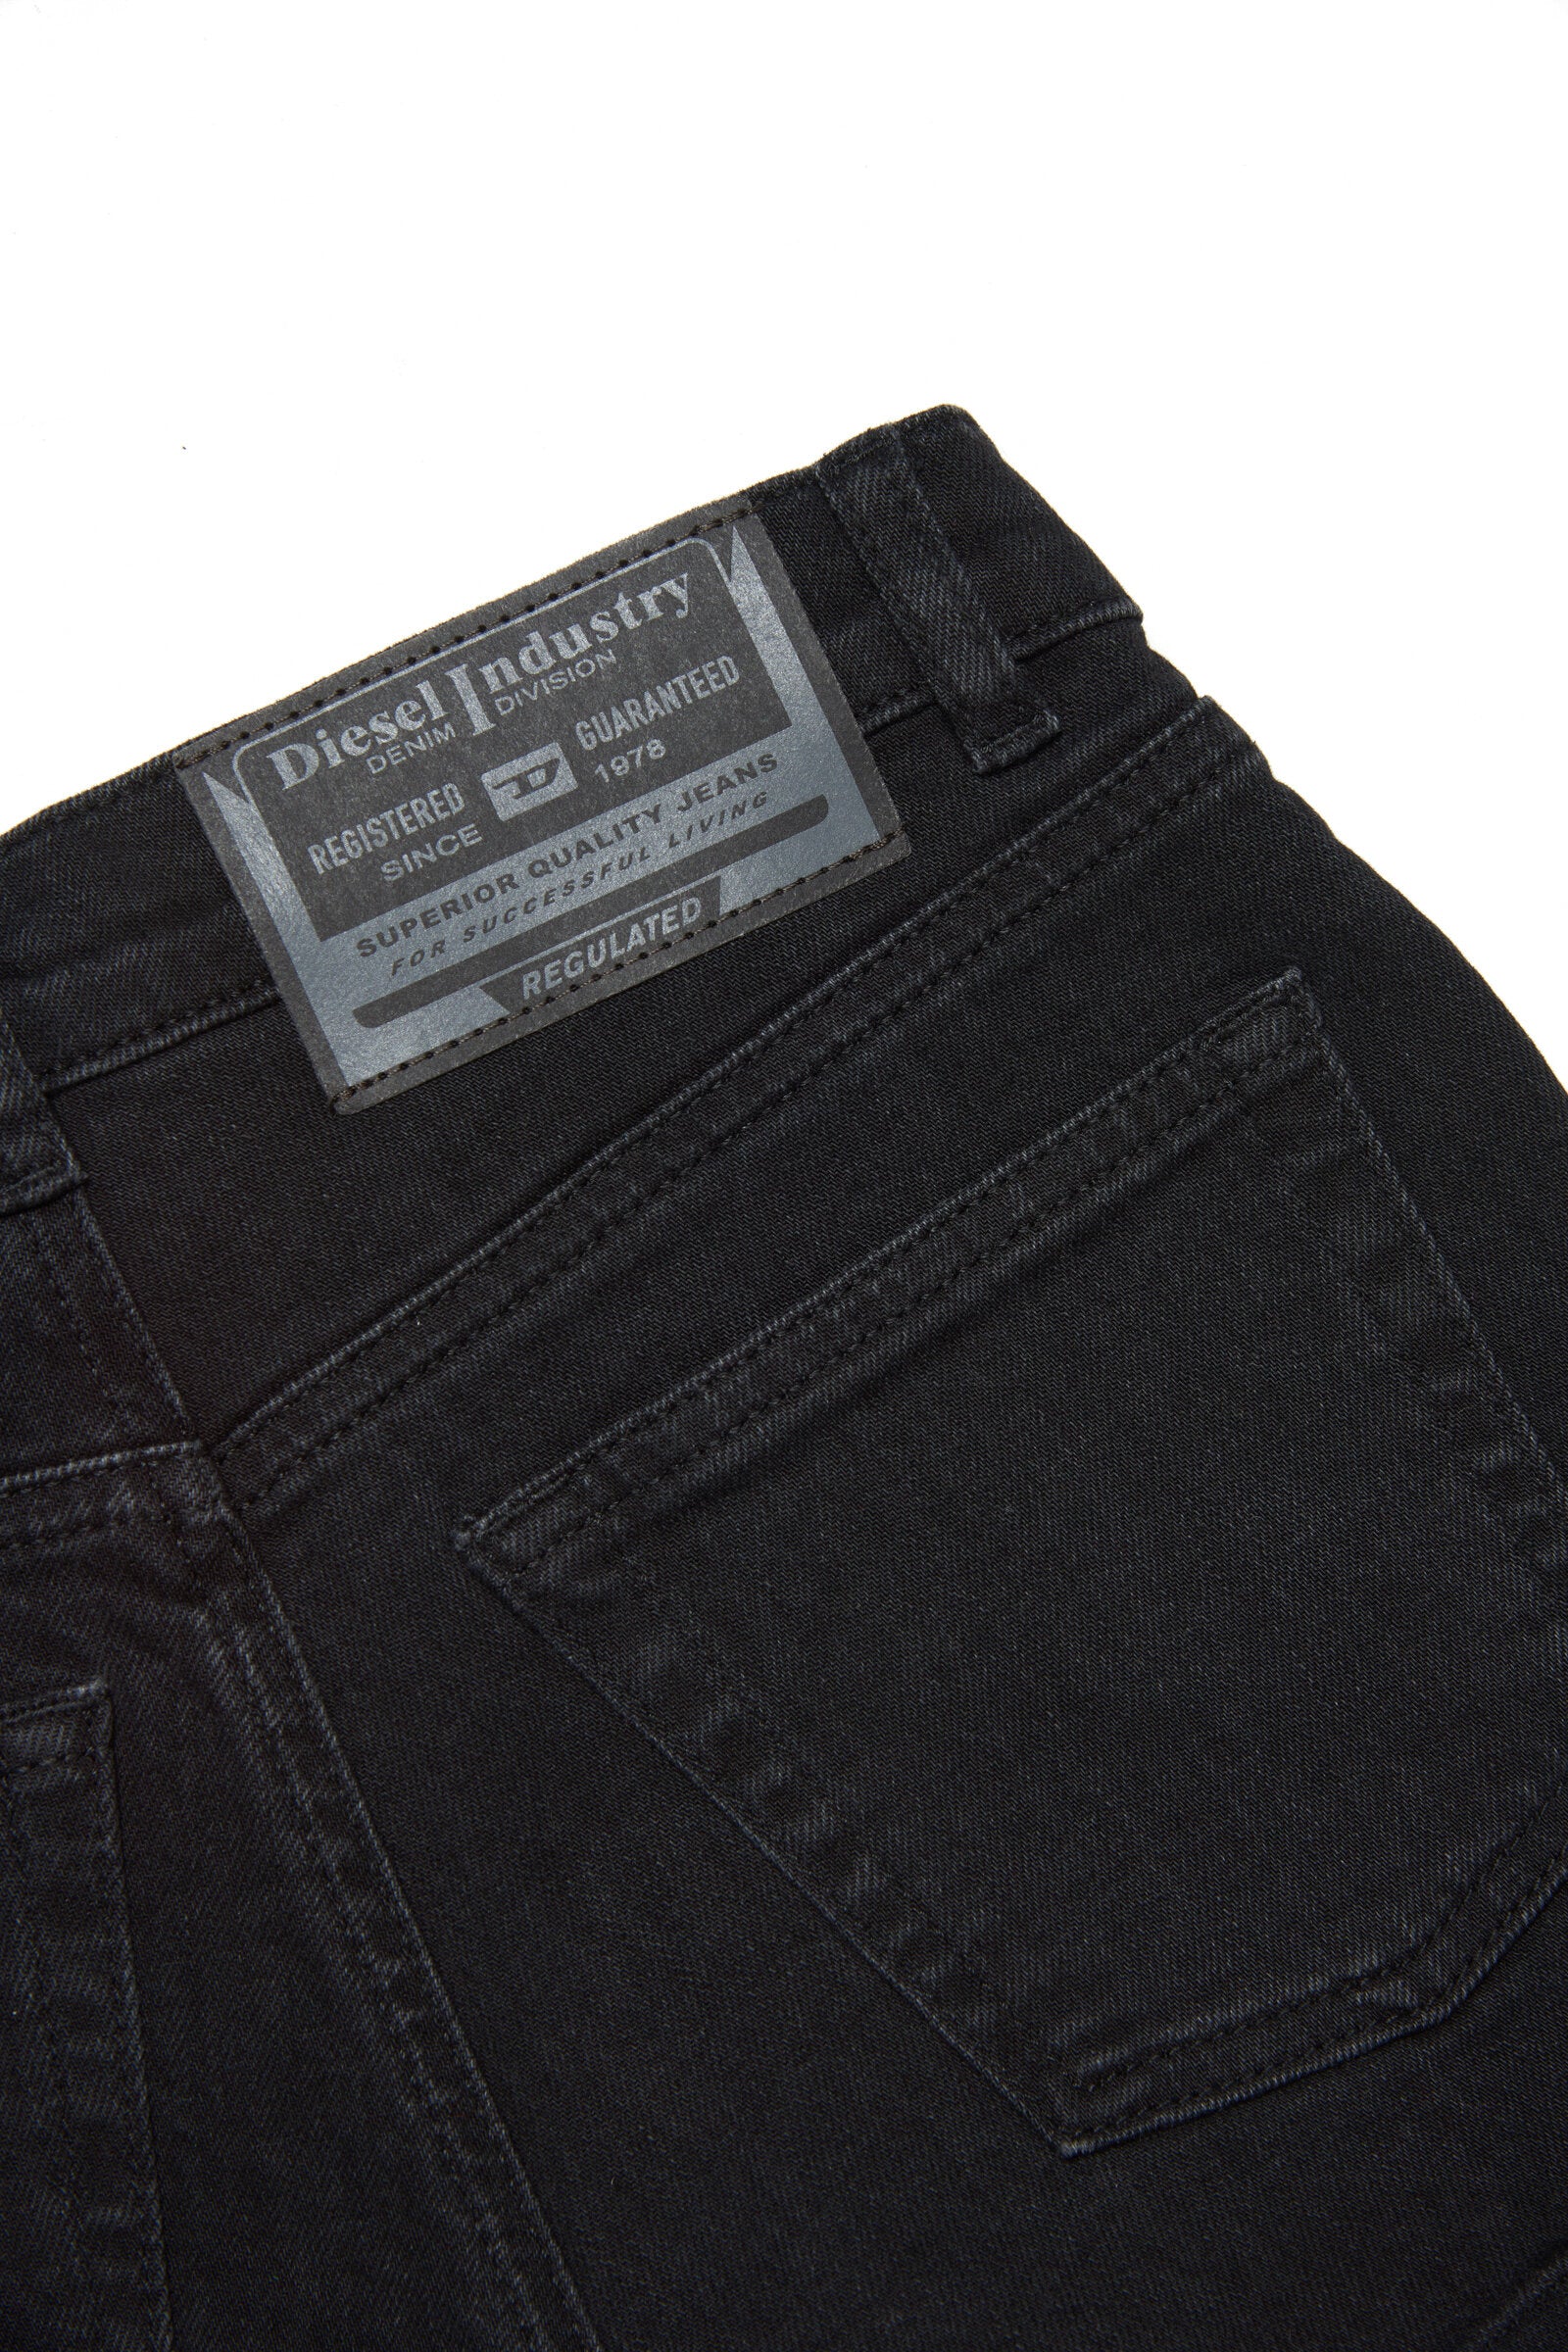 Pantalones cortos con 5 bolsillos de mezclilla negra